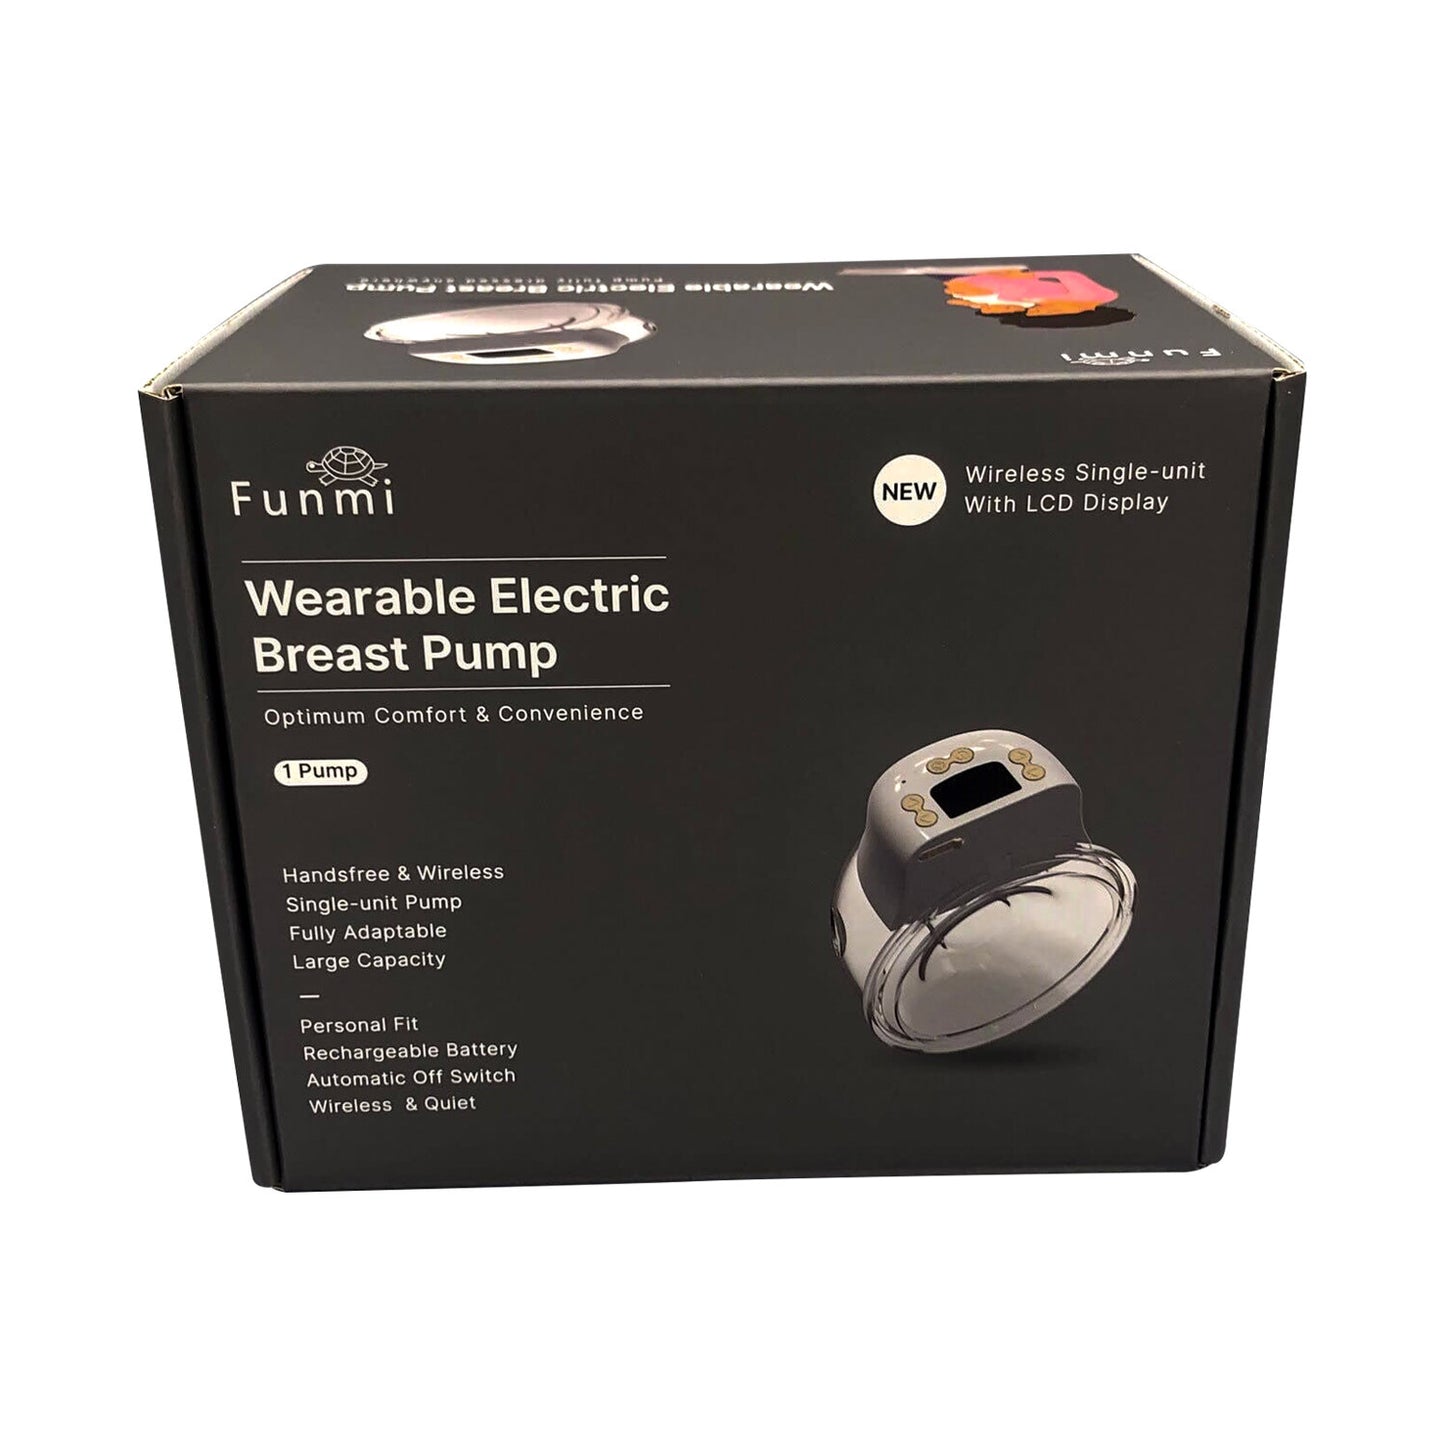 Breast Pump Instalment Payment